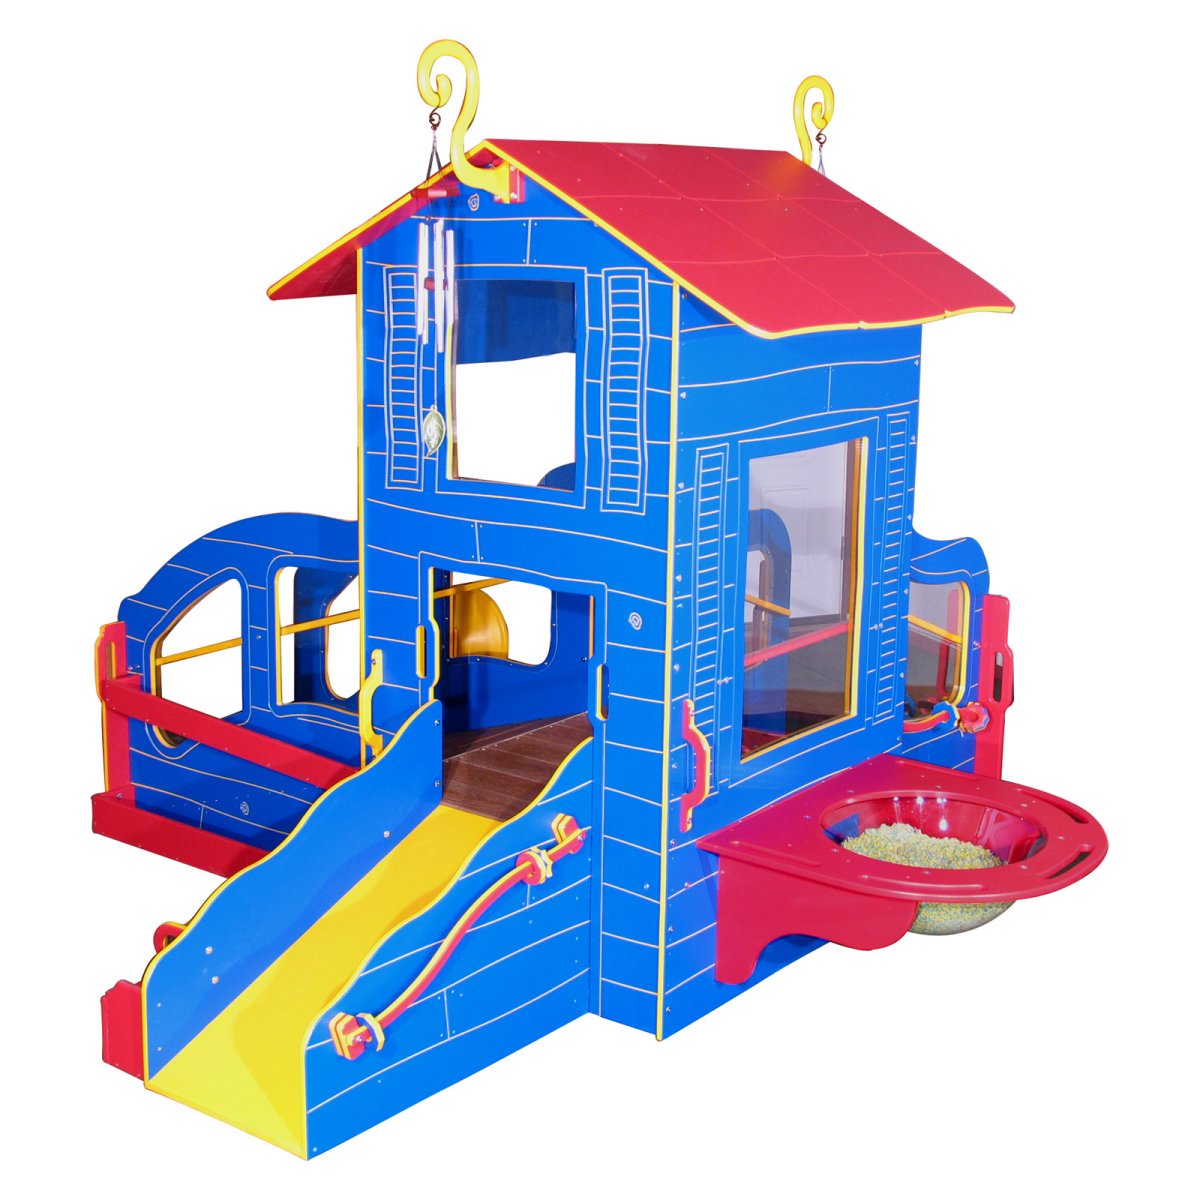 Strictly for Kids Infant/Toddler Cottage Playstation 4 Outdoor ...